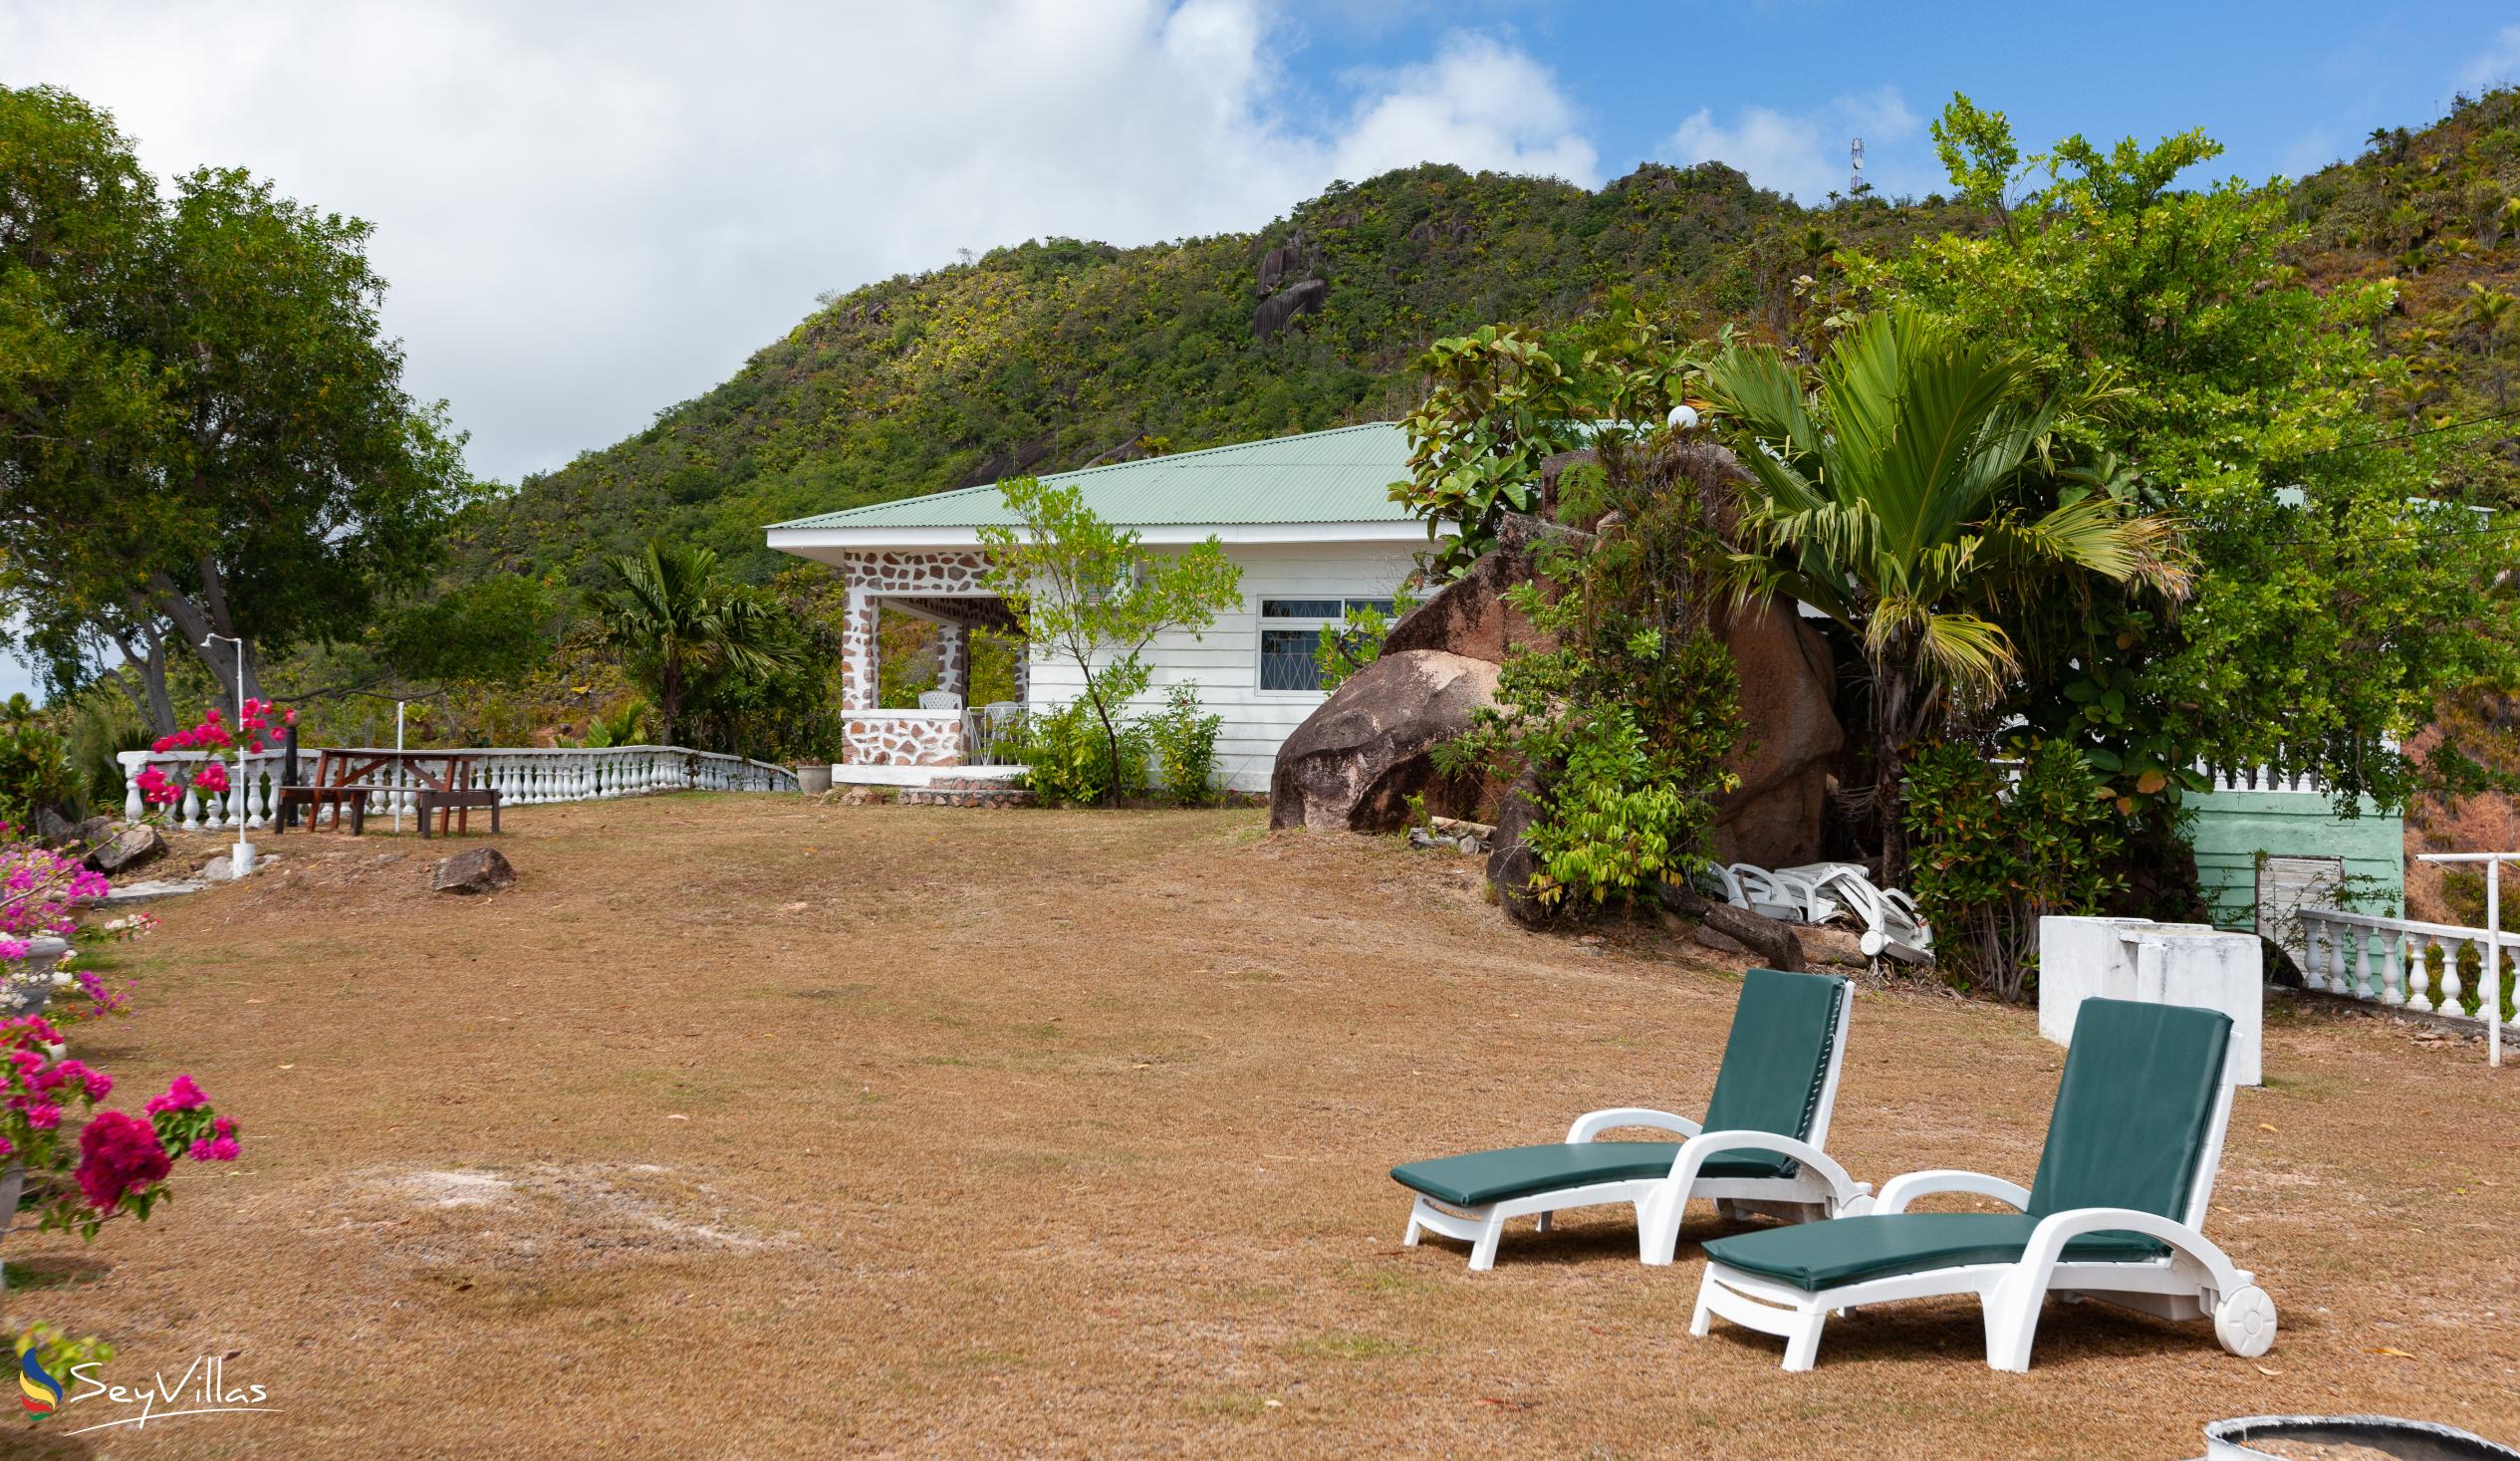 Foto 11: Maison du Soleil - Aussenbereich - Praslin (Seychellen)